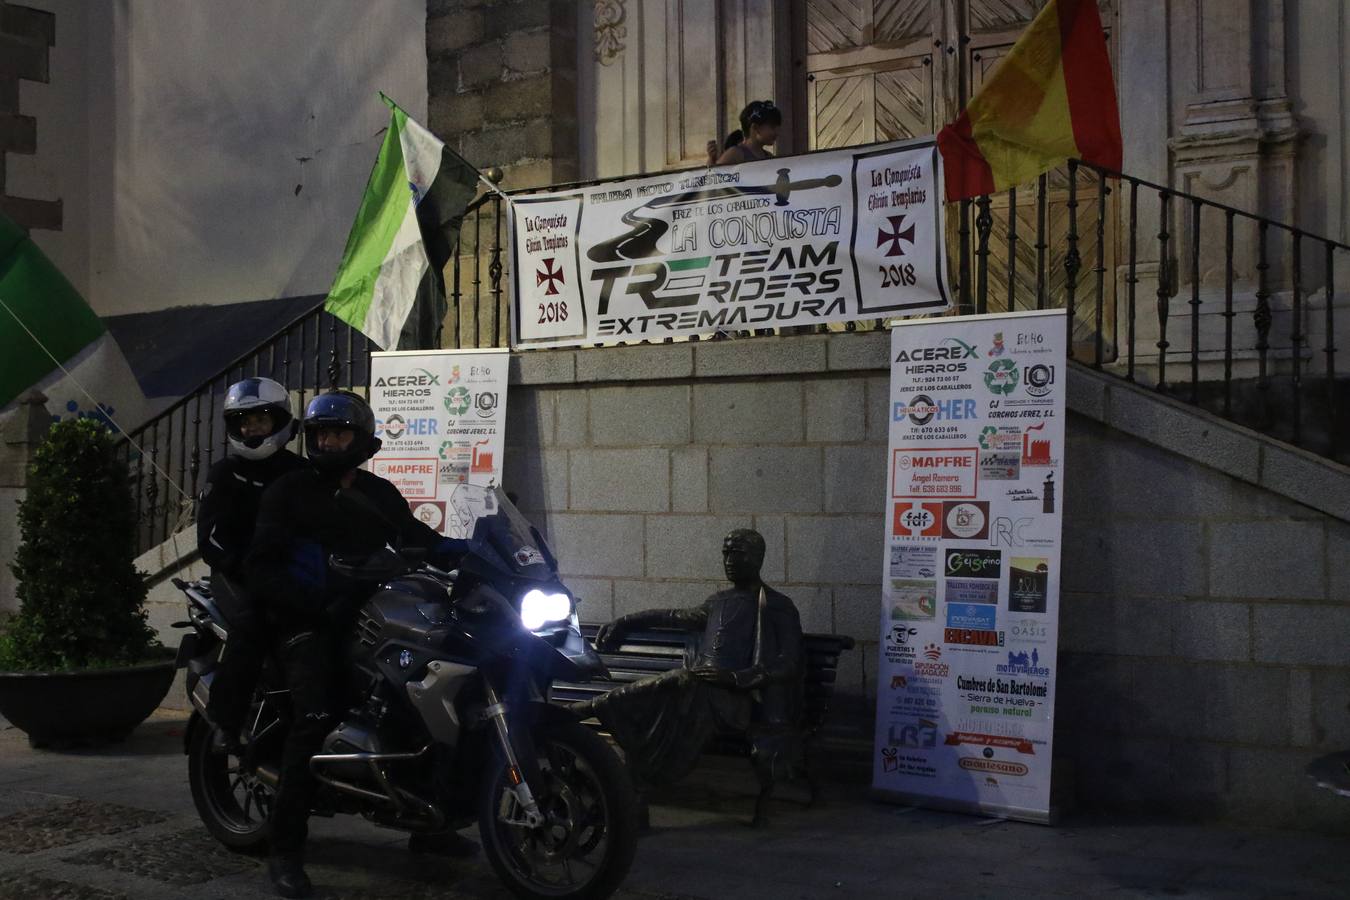 La III Ruta moto turística 'La Conquista' rinde homenaje a Los Templarios